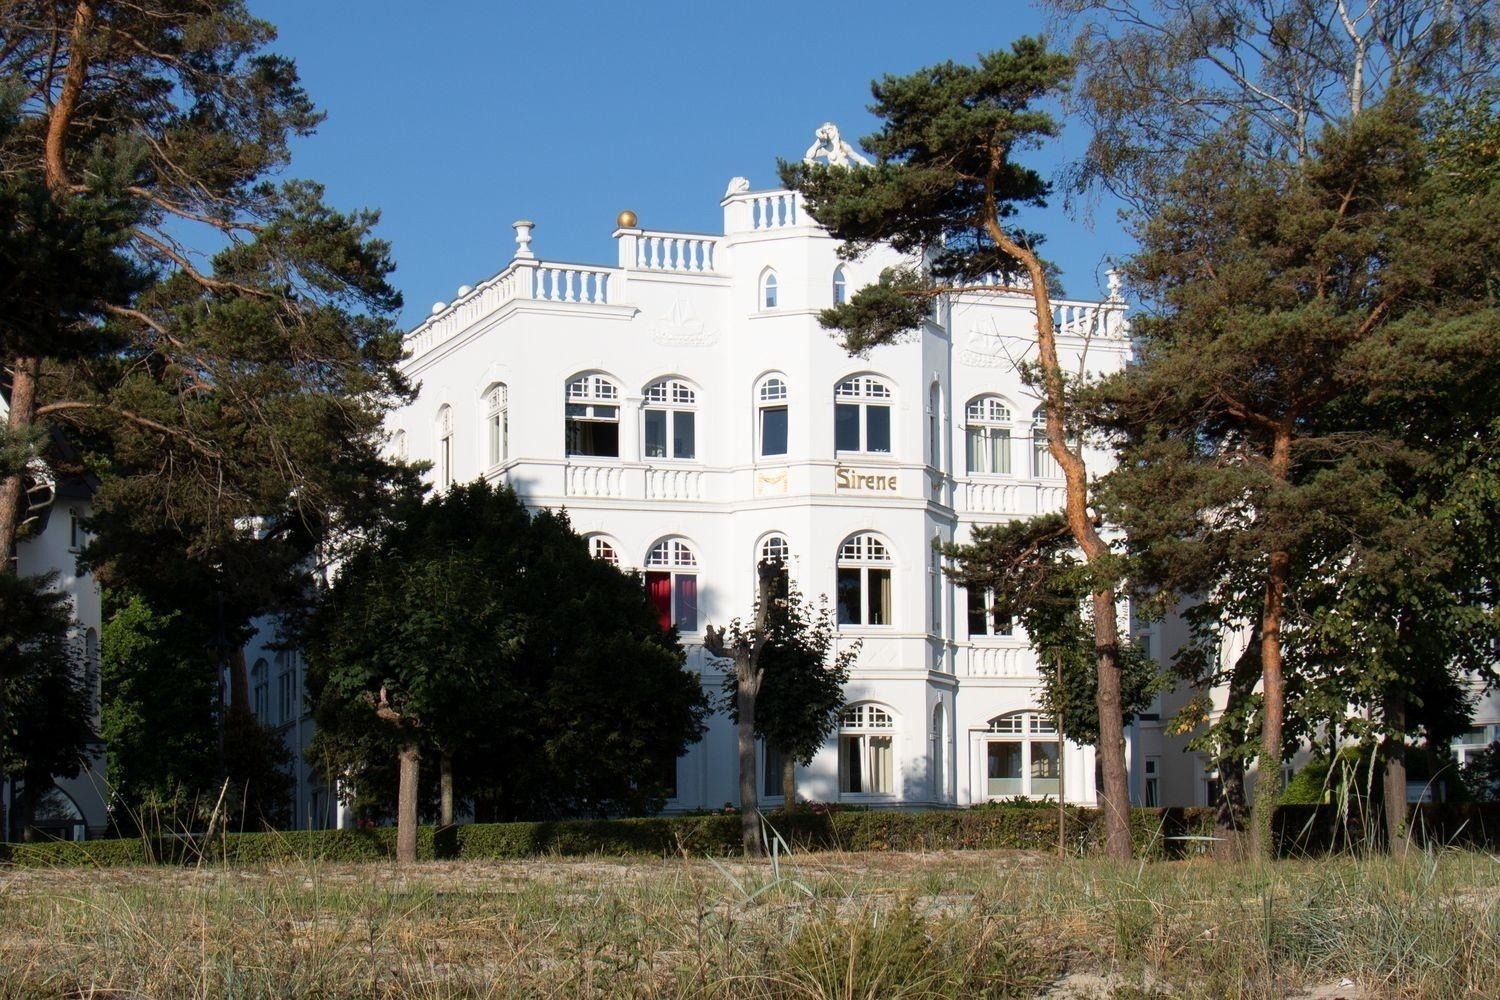 Villa Sirene 2-Raum Apartment, ca. 54 qm Ferienwohnung in Mecklenburg Vorpommern